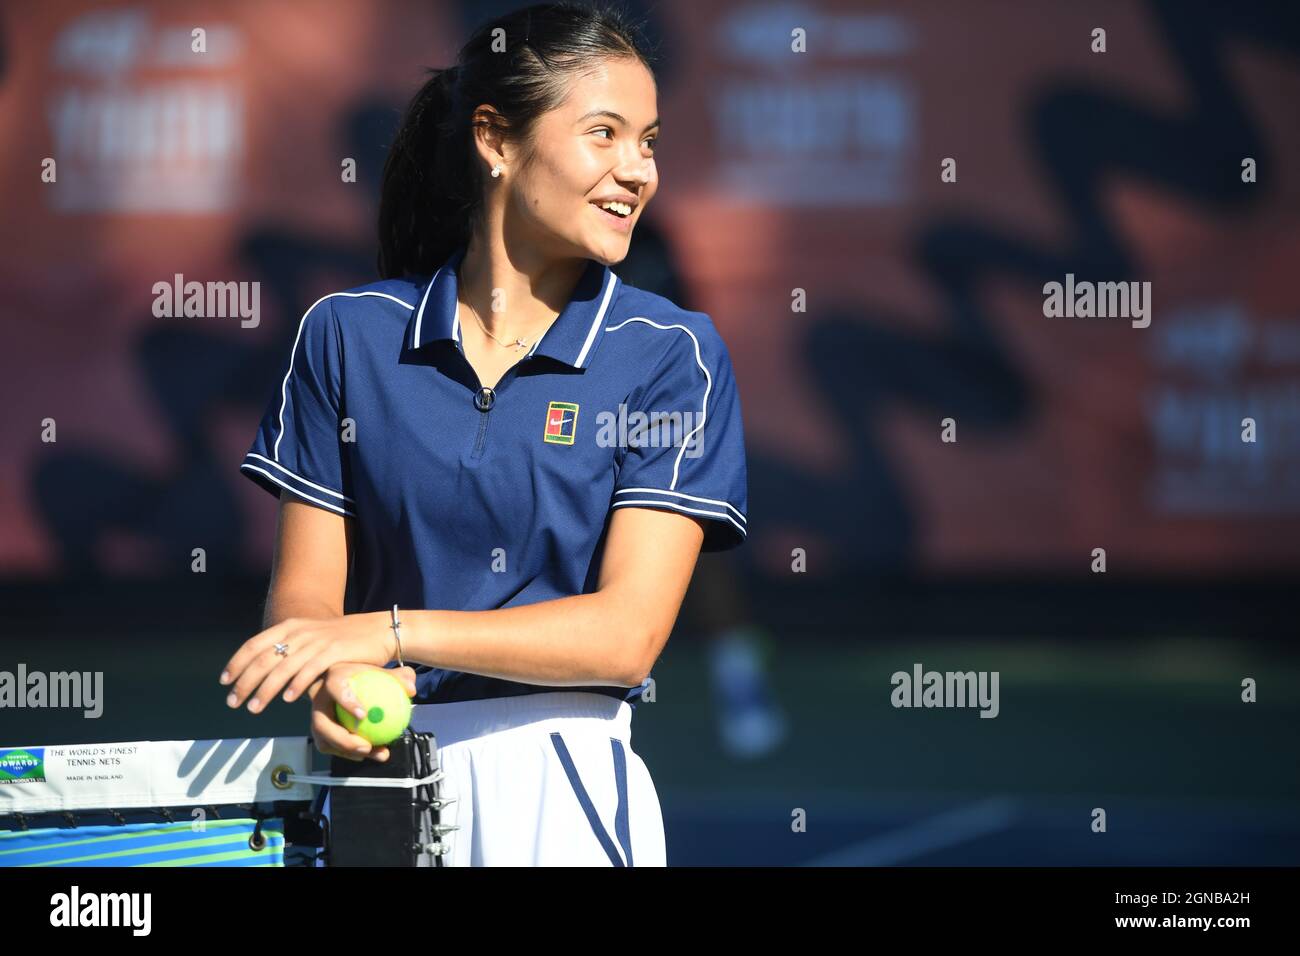 Emma Raducanu, championne américaine de l'Open britannique, lors d'un événement organisé par le programme LTA Youth, au National tennis Centre de Londres. Date de la photo : vendredi 24 septembre 2021. Banque D'Images